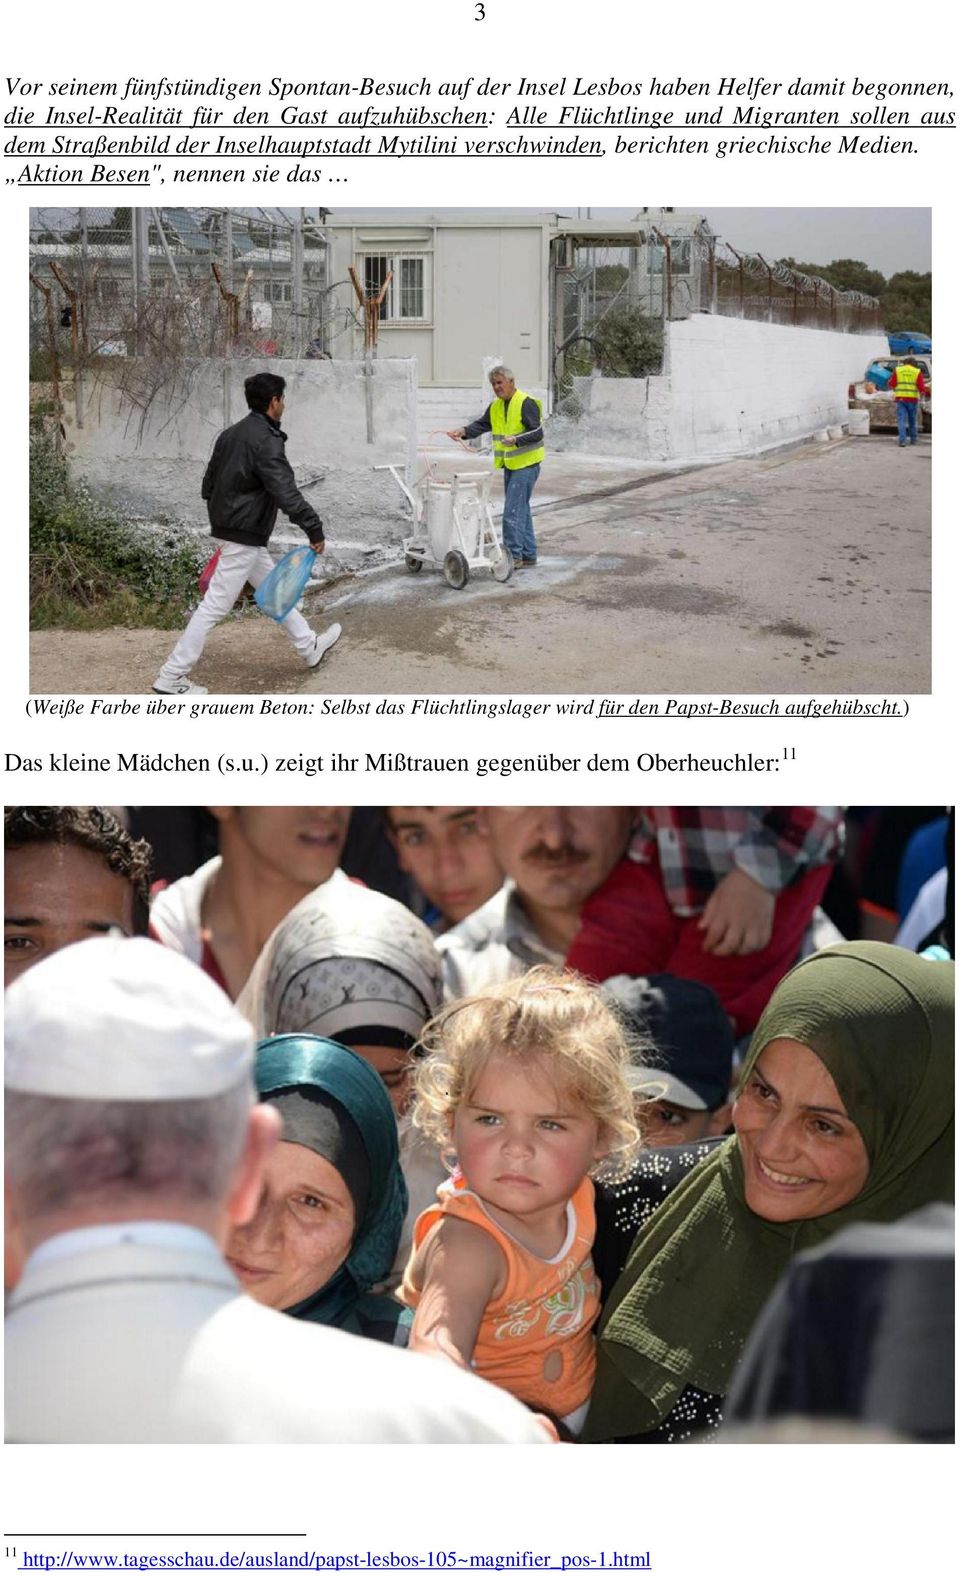 Medien. Aktion Besen", nennen sie das (Weiße Farbe über grauem Beton: Selbst das Flüchtlingslager wird für den Papst-Besuch aufgehübscht.